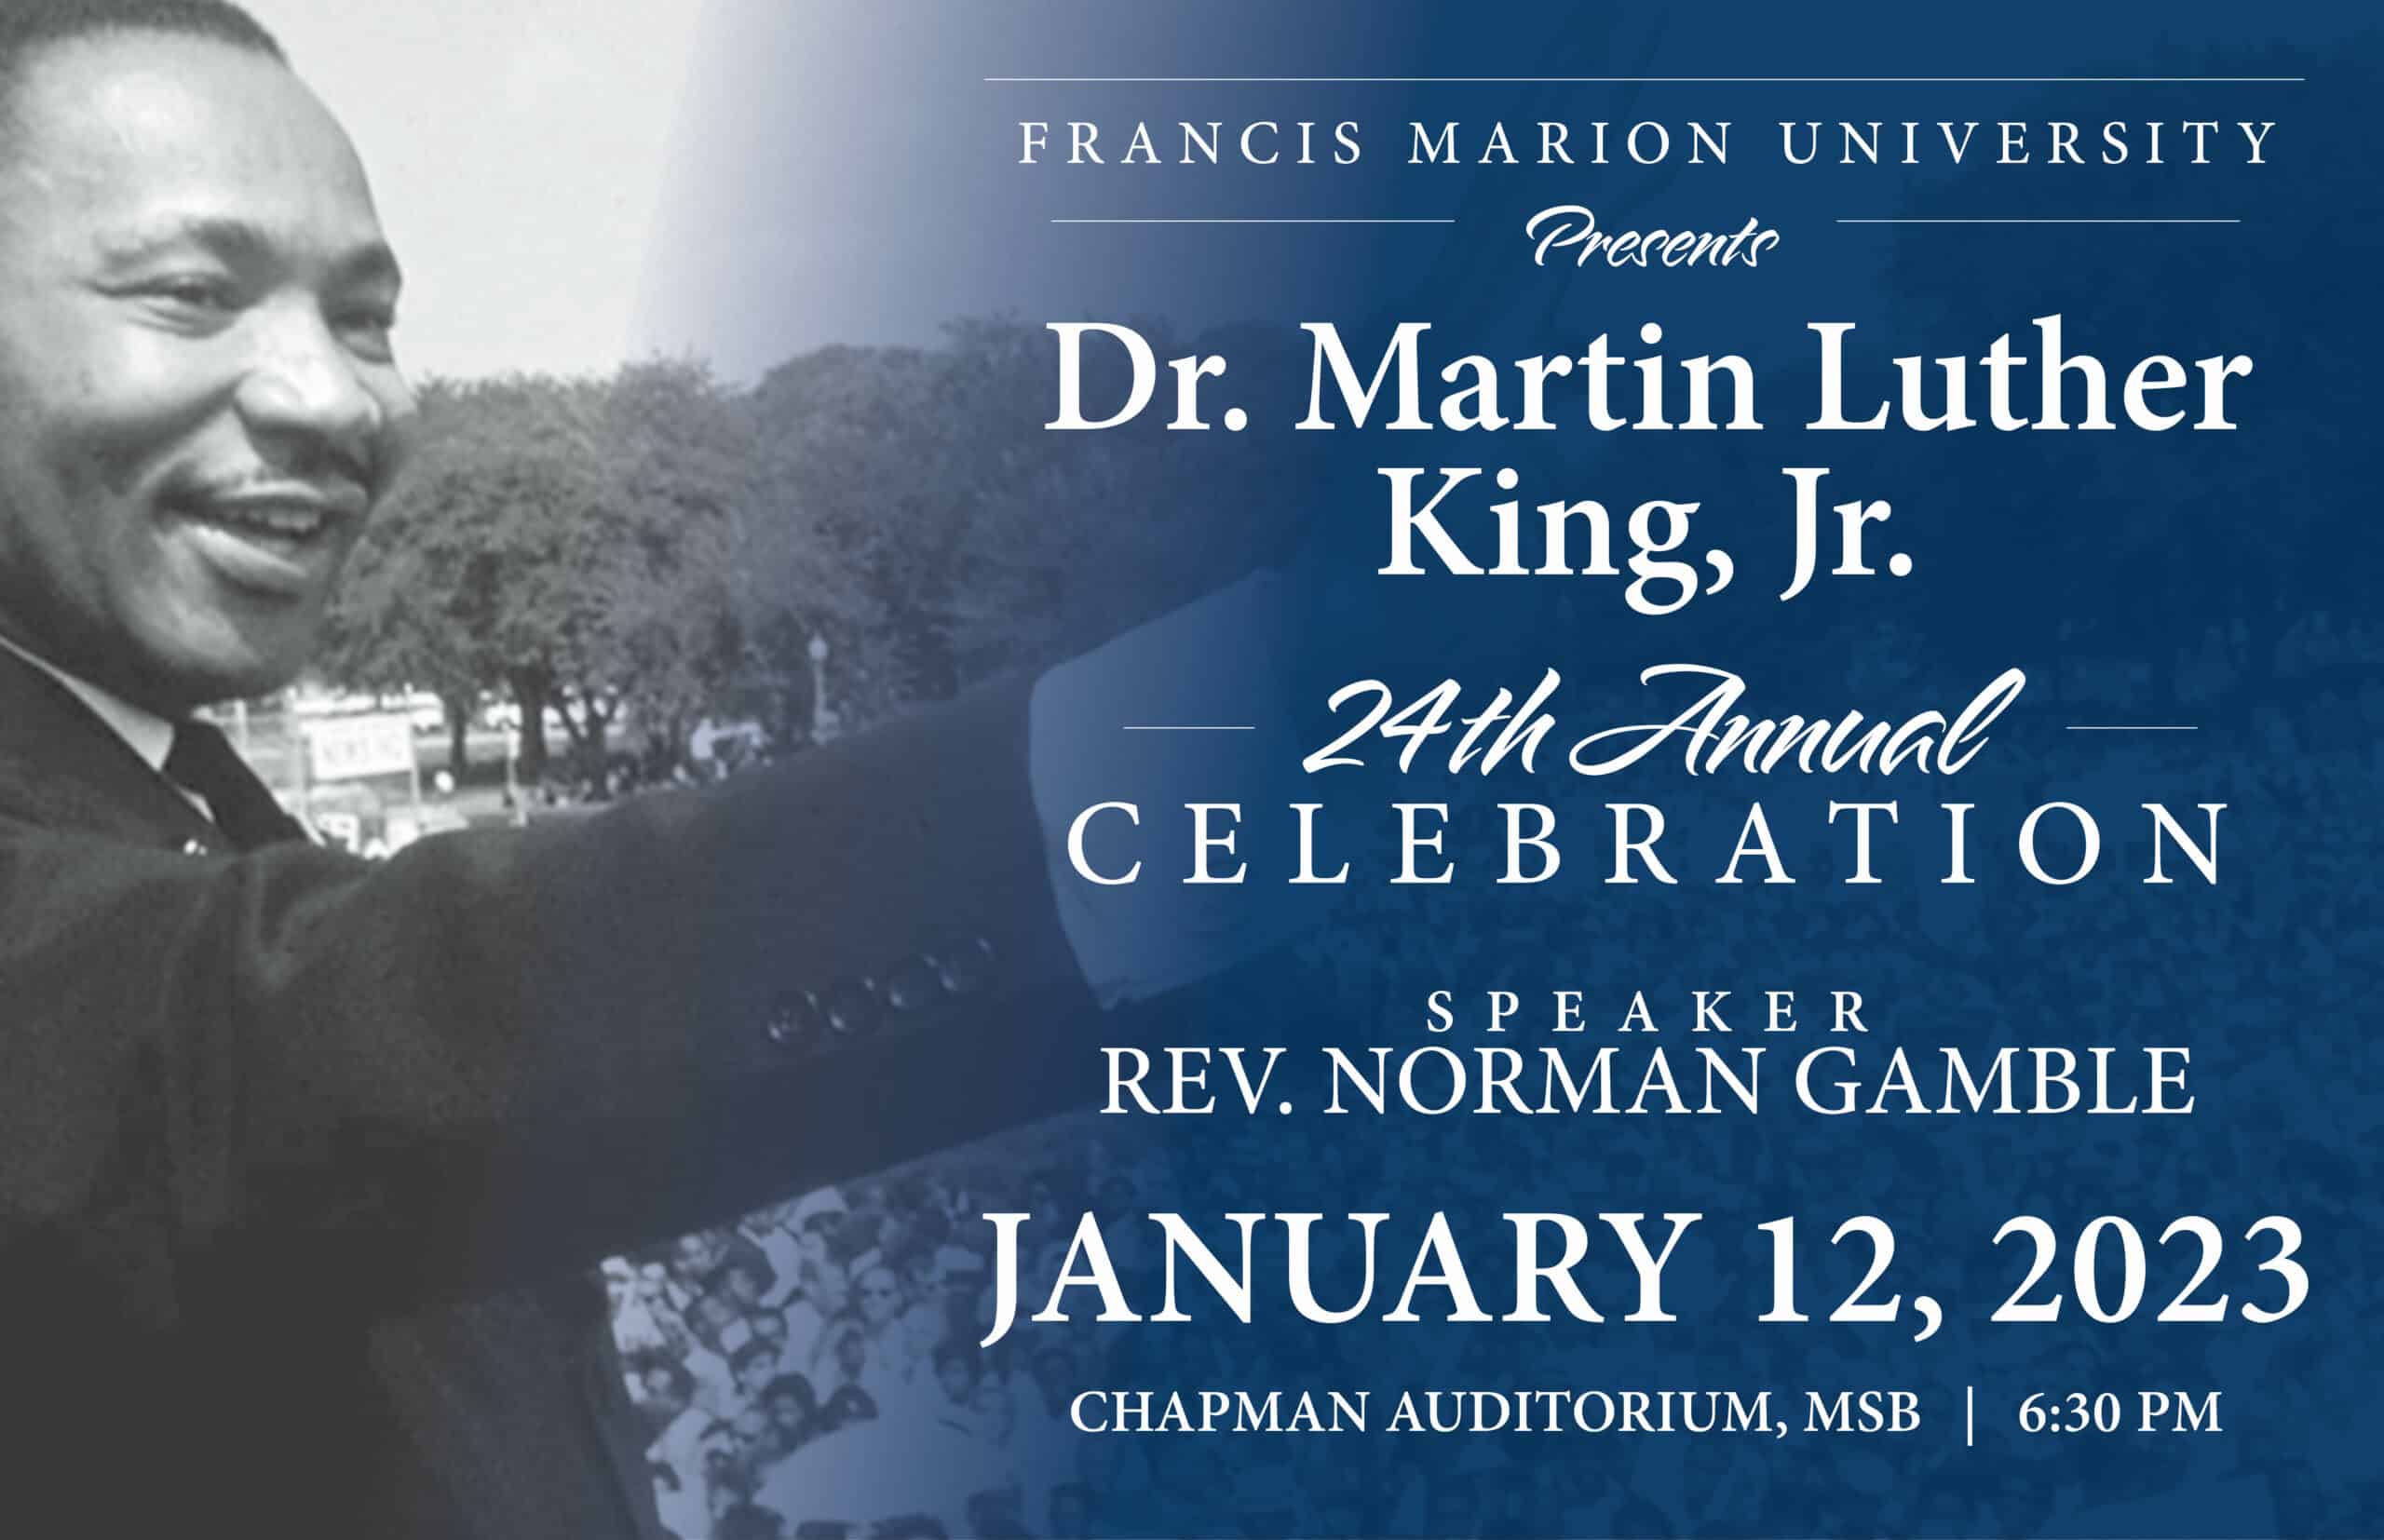 FMU to host MLK celebration January 12